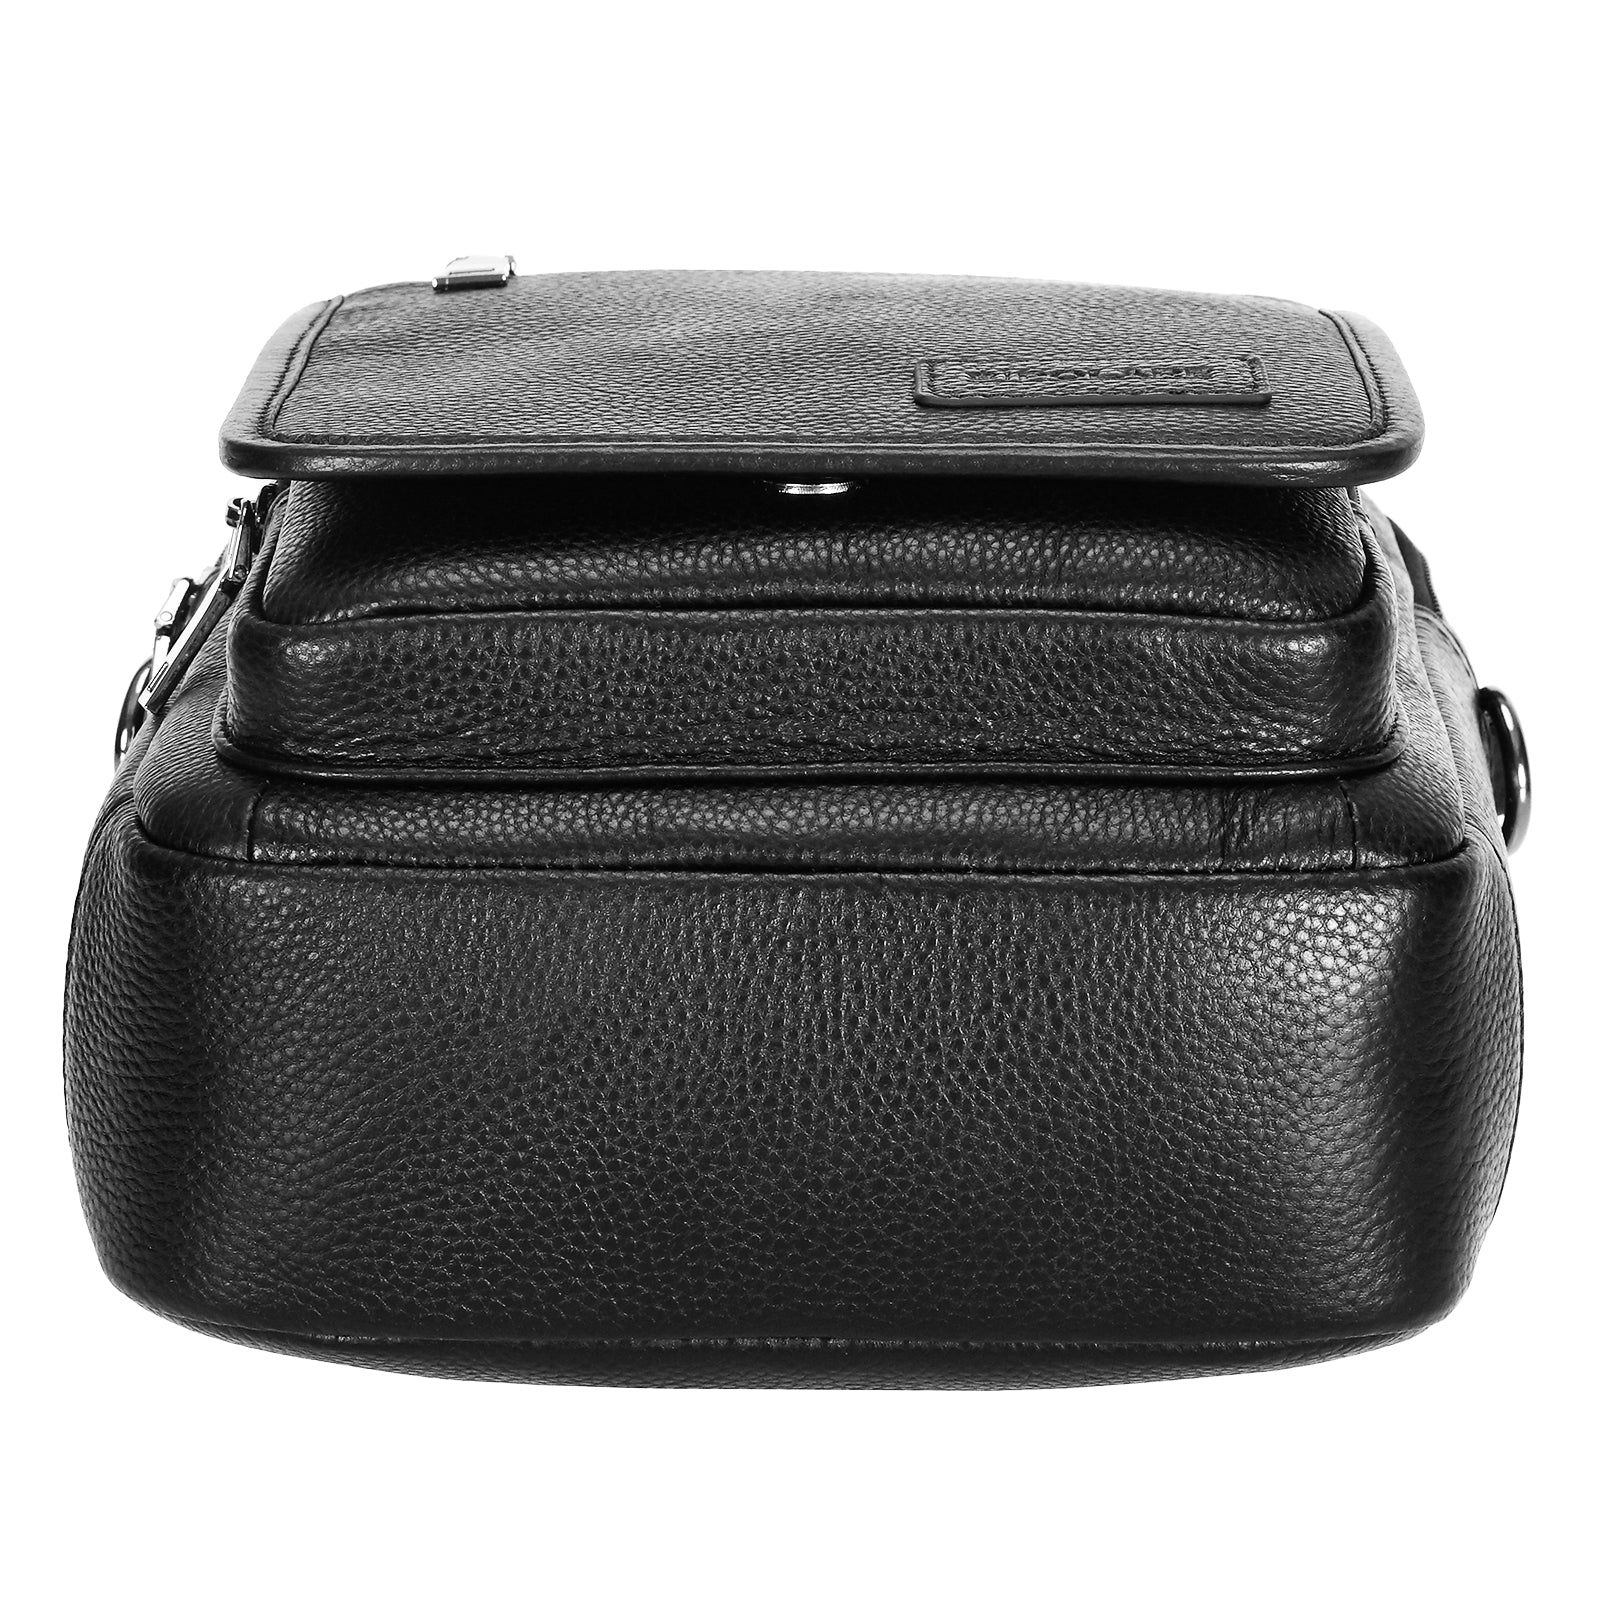 Italian Leather Messenger Bag Waterproof Travel Shoulder Bag (Bottom)